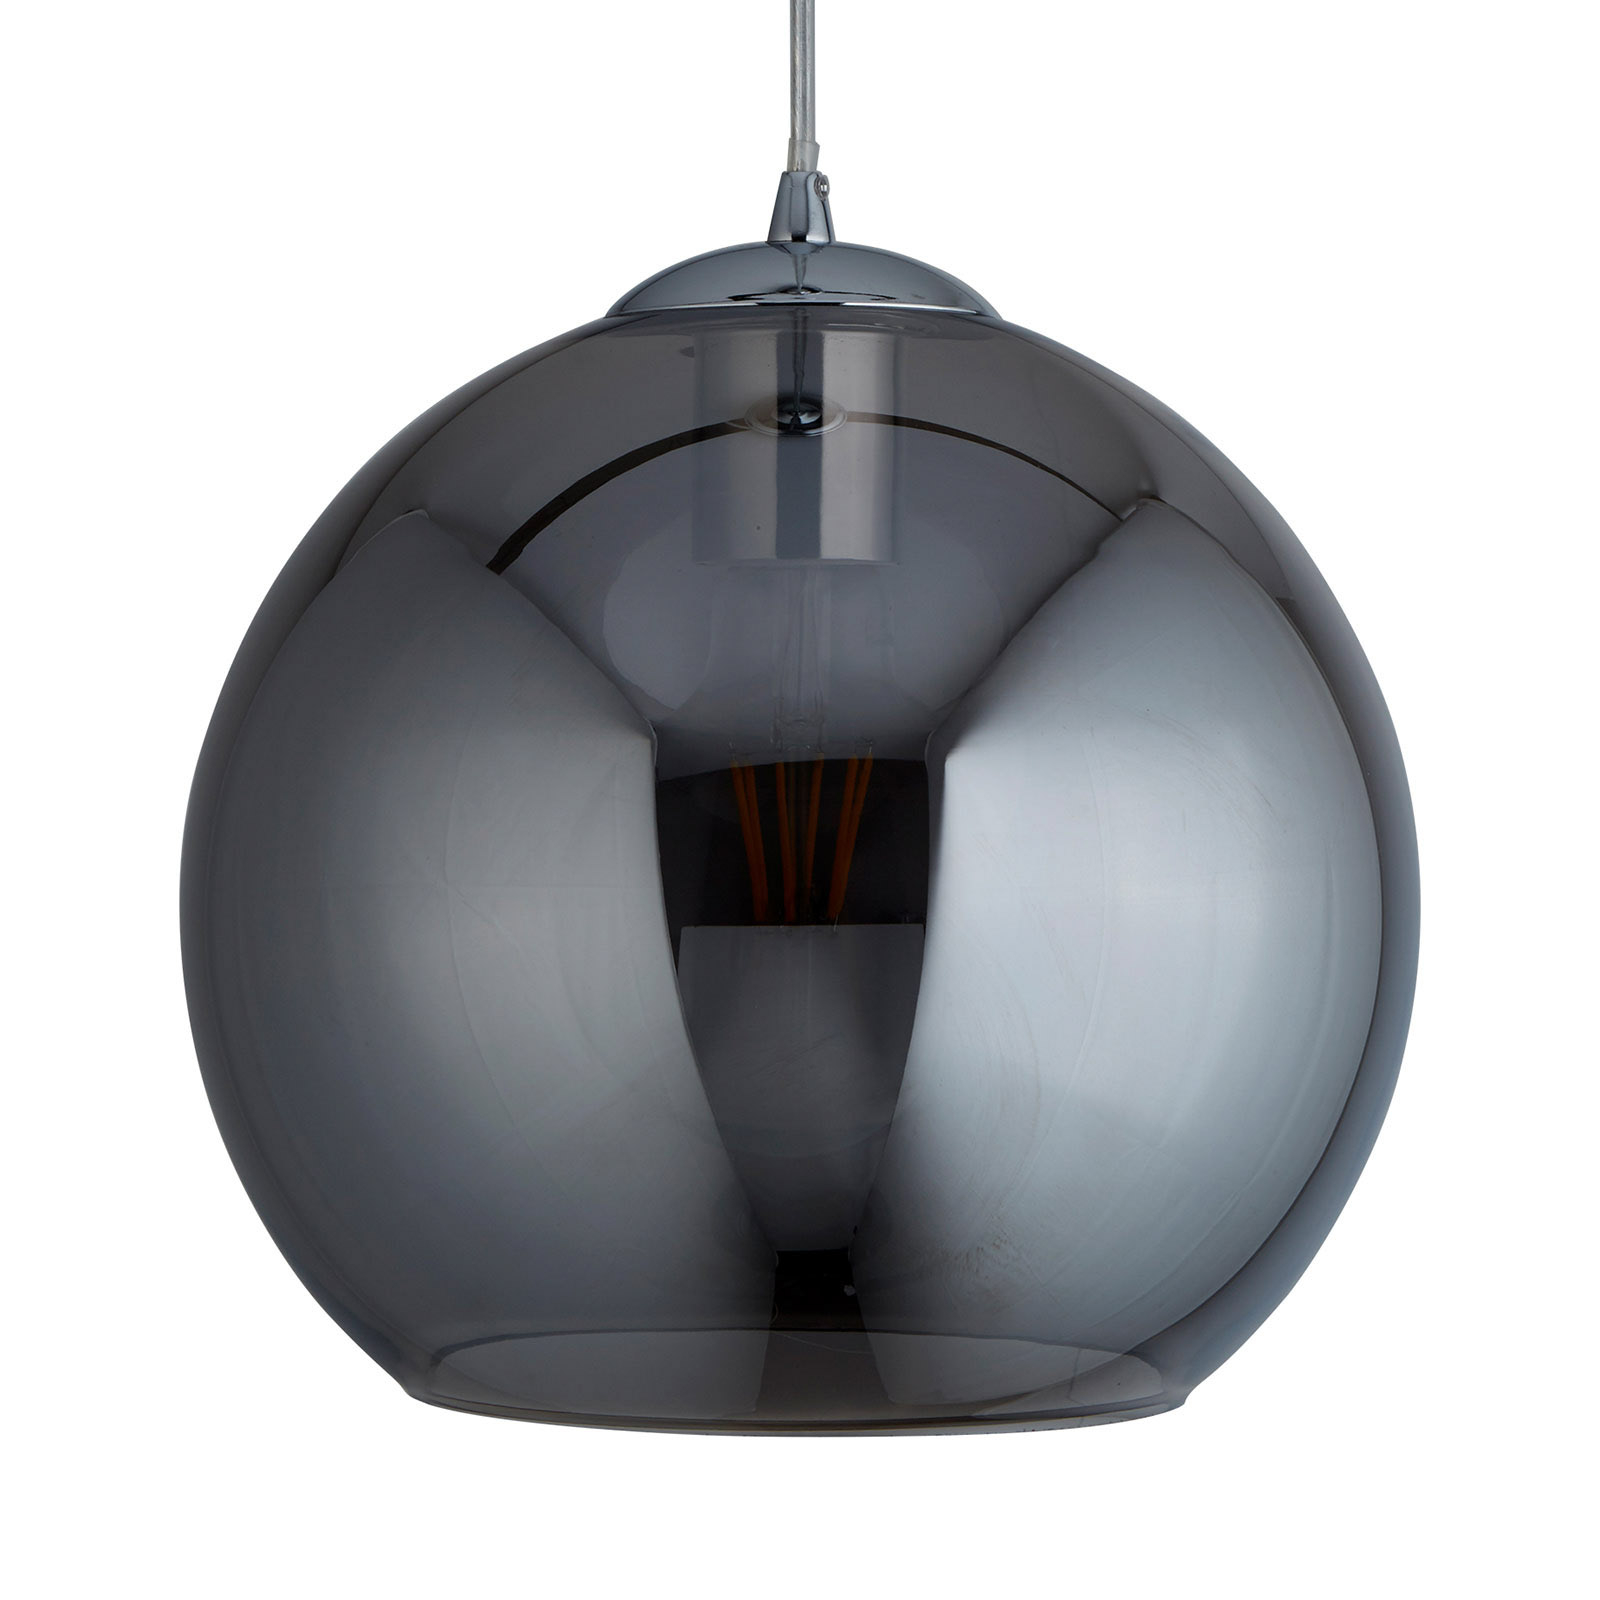 Hanglamp Balls, glasbol gerookt, Ø 30cm